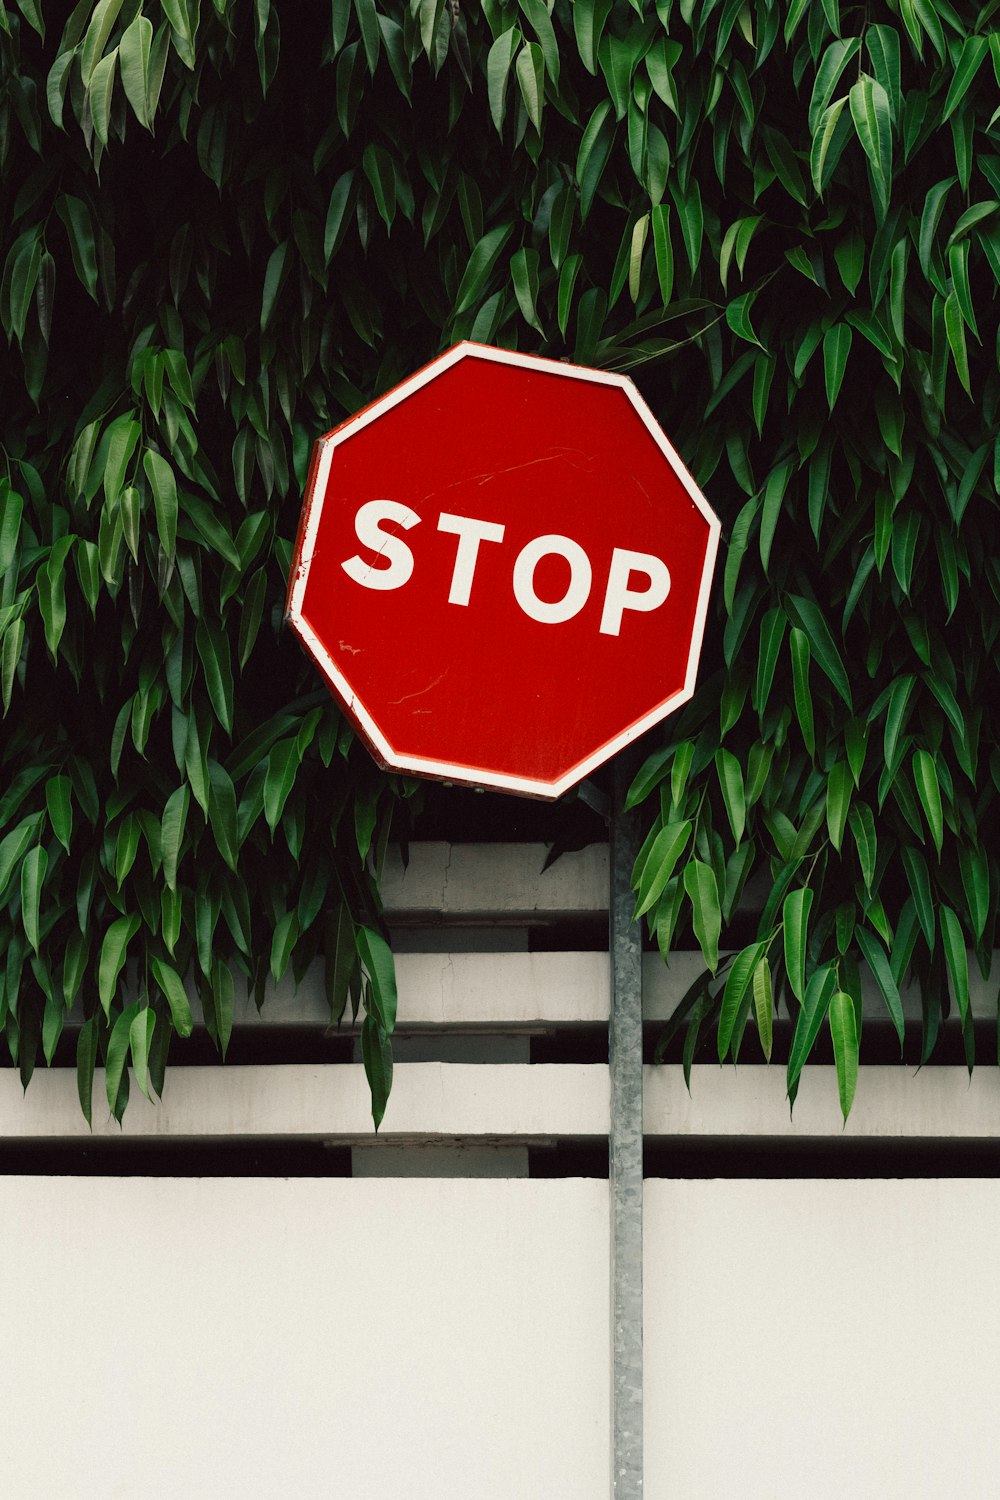 Panneau de signalisation d'arrêt rouge et blanc près de l'arbre vert